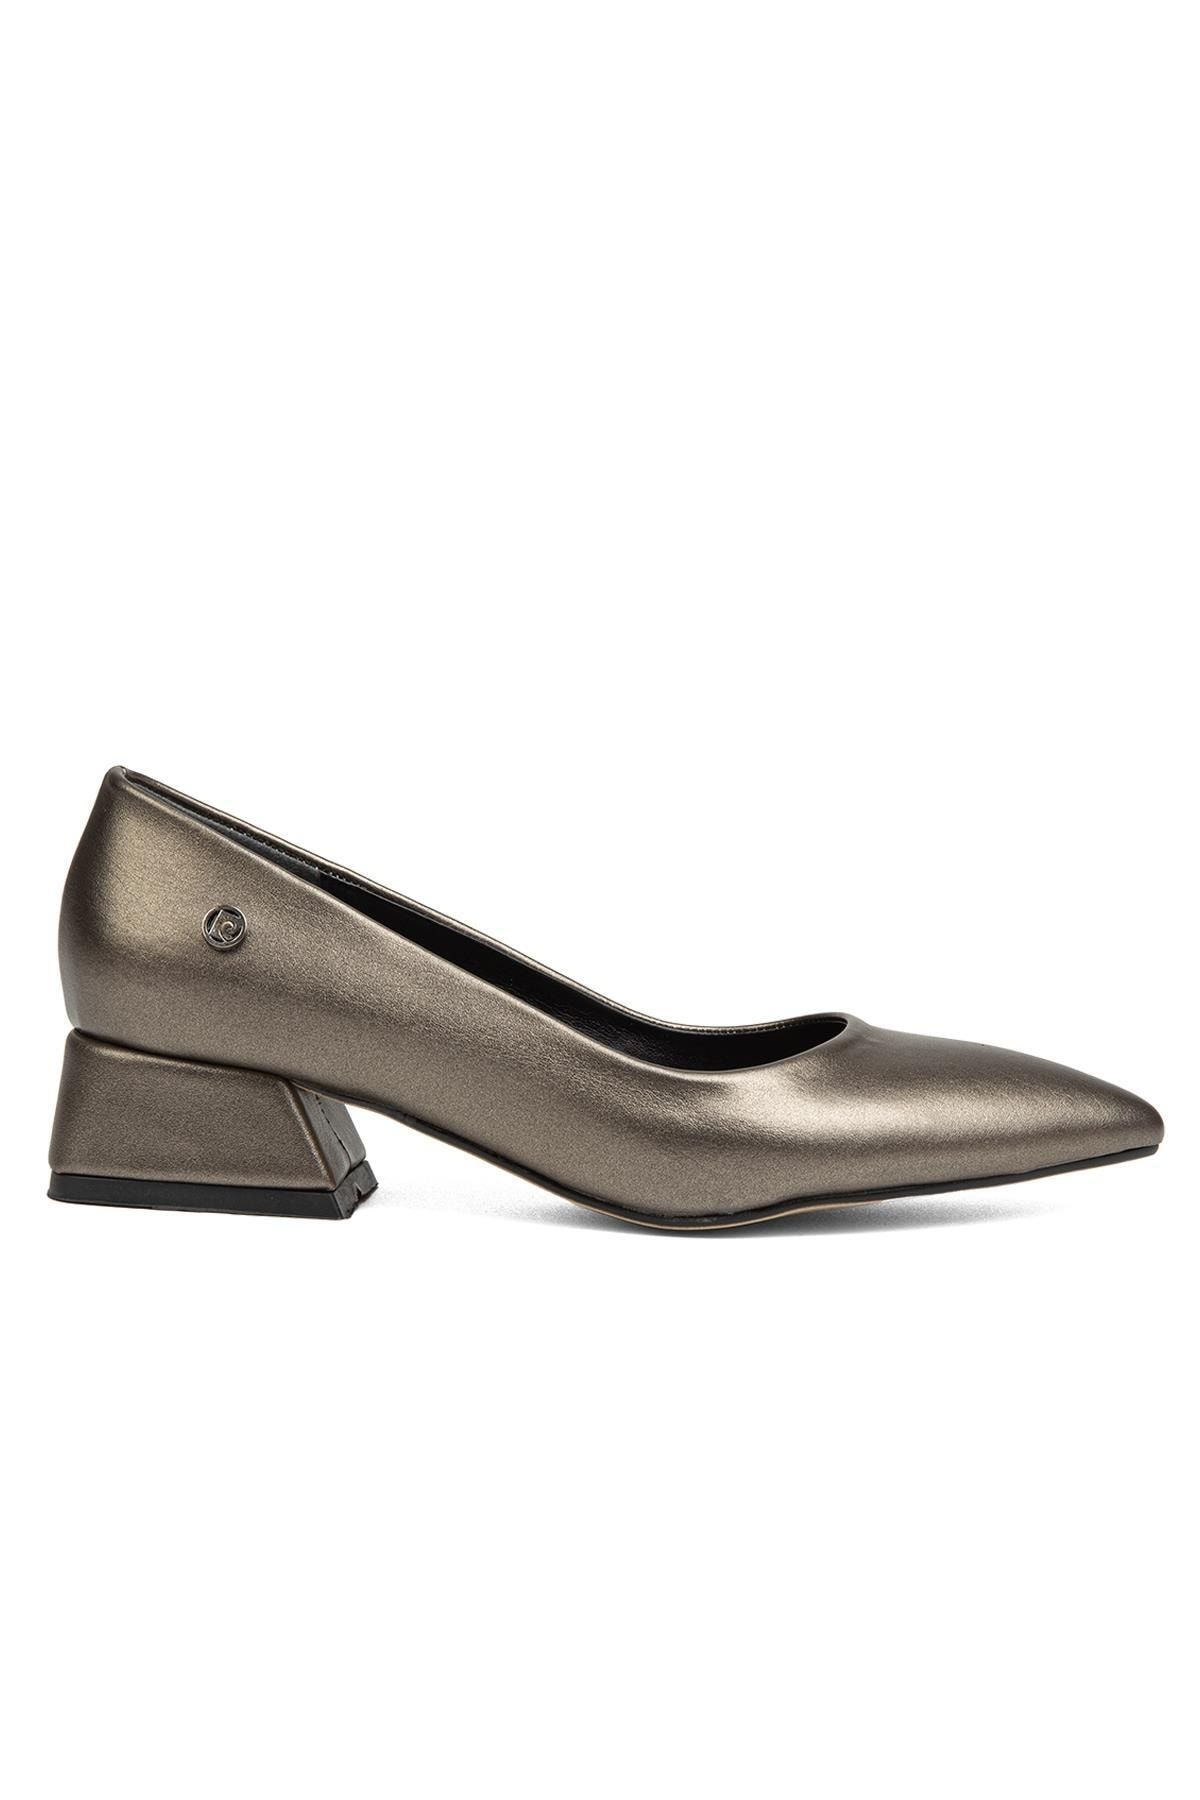 Pierre Cardin ® | Pc-52009-3478 Platin Cilt - Kadın Topuklu Ayakkabı